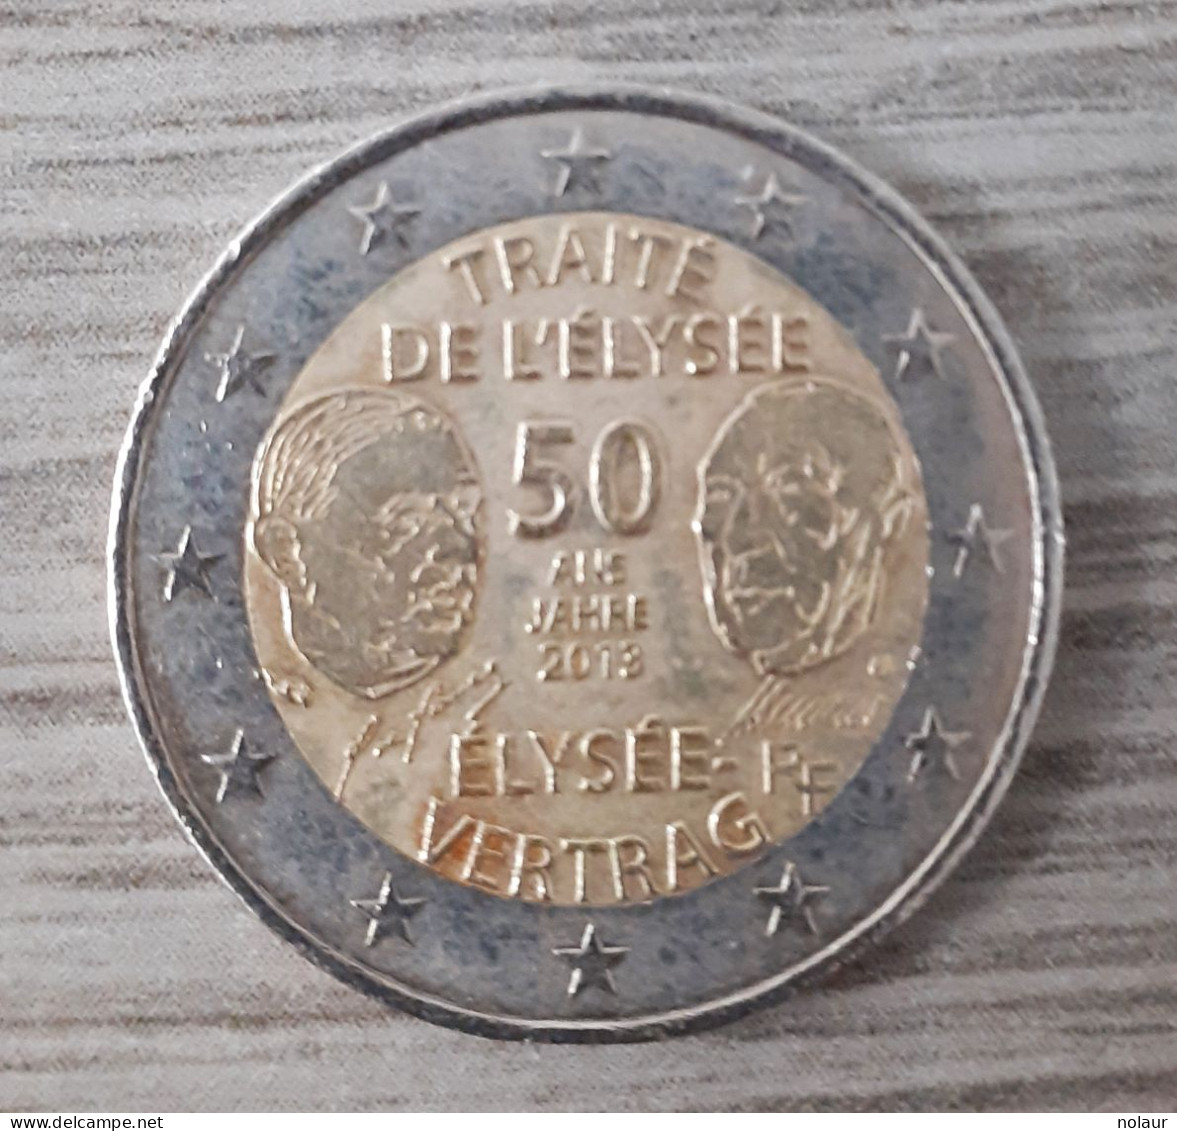 PIECE COMMEMORATIVE 2 EUROS Traité De L'Elysée - France